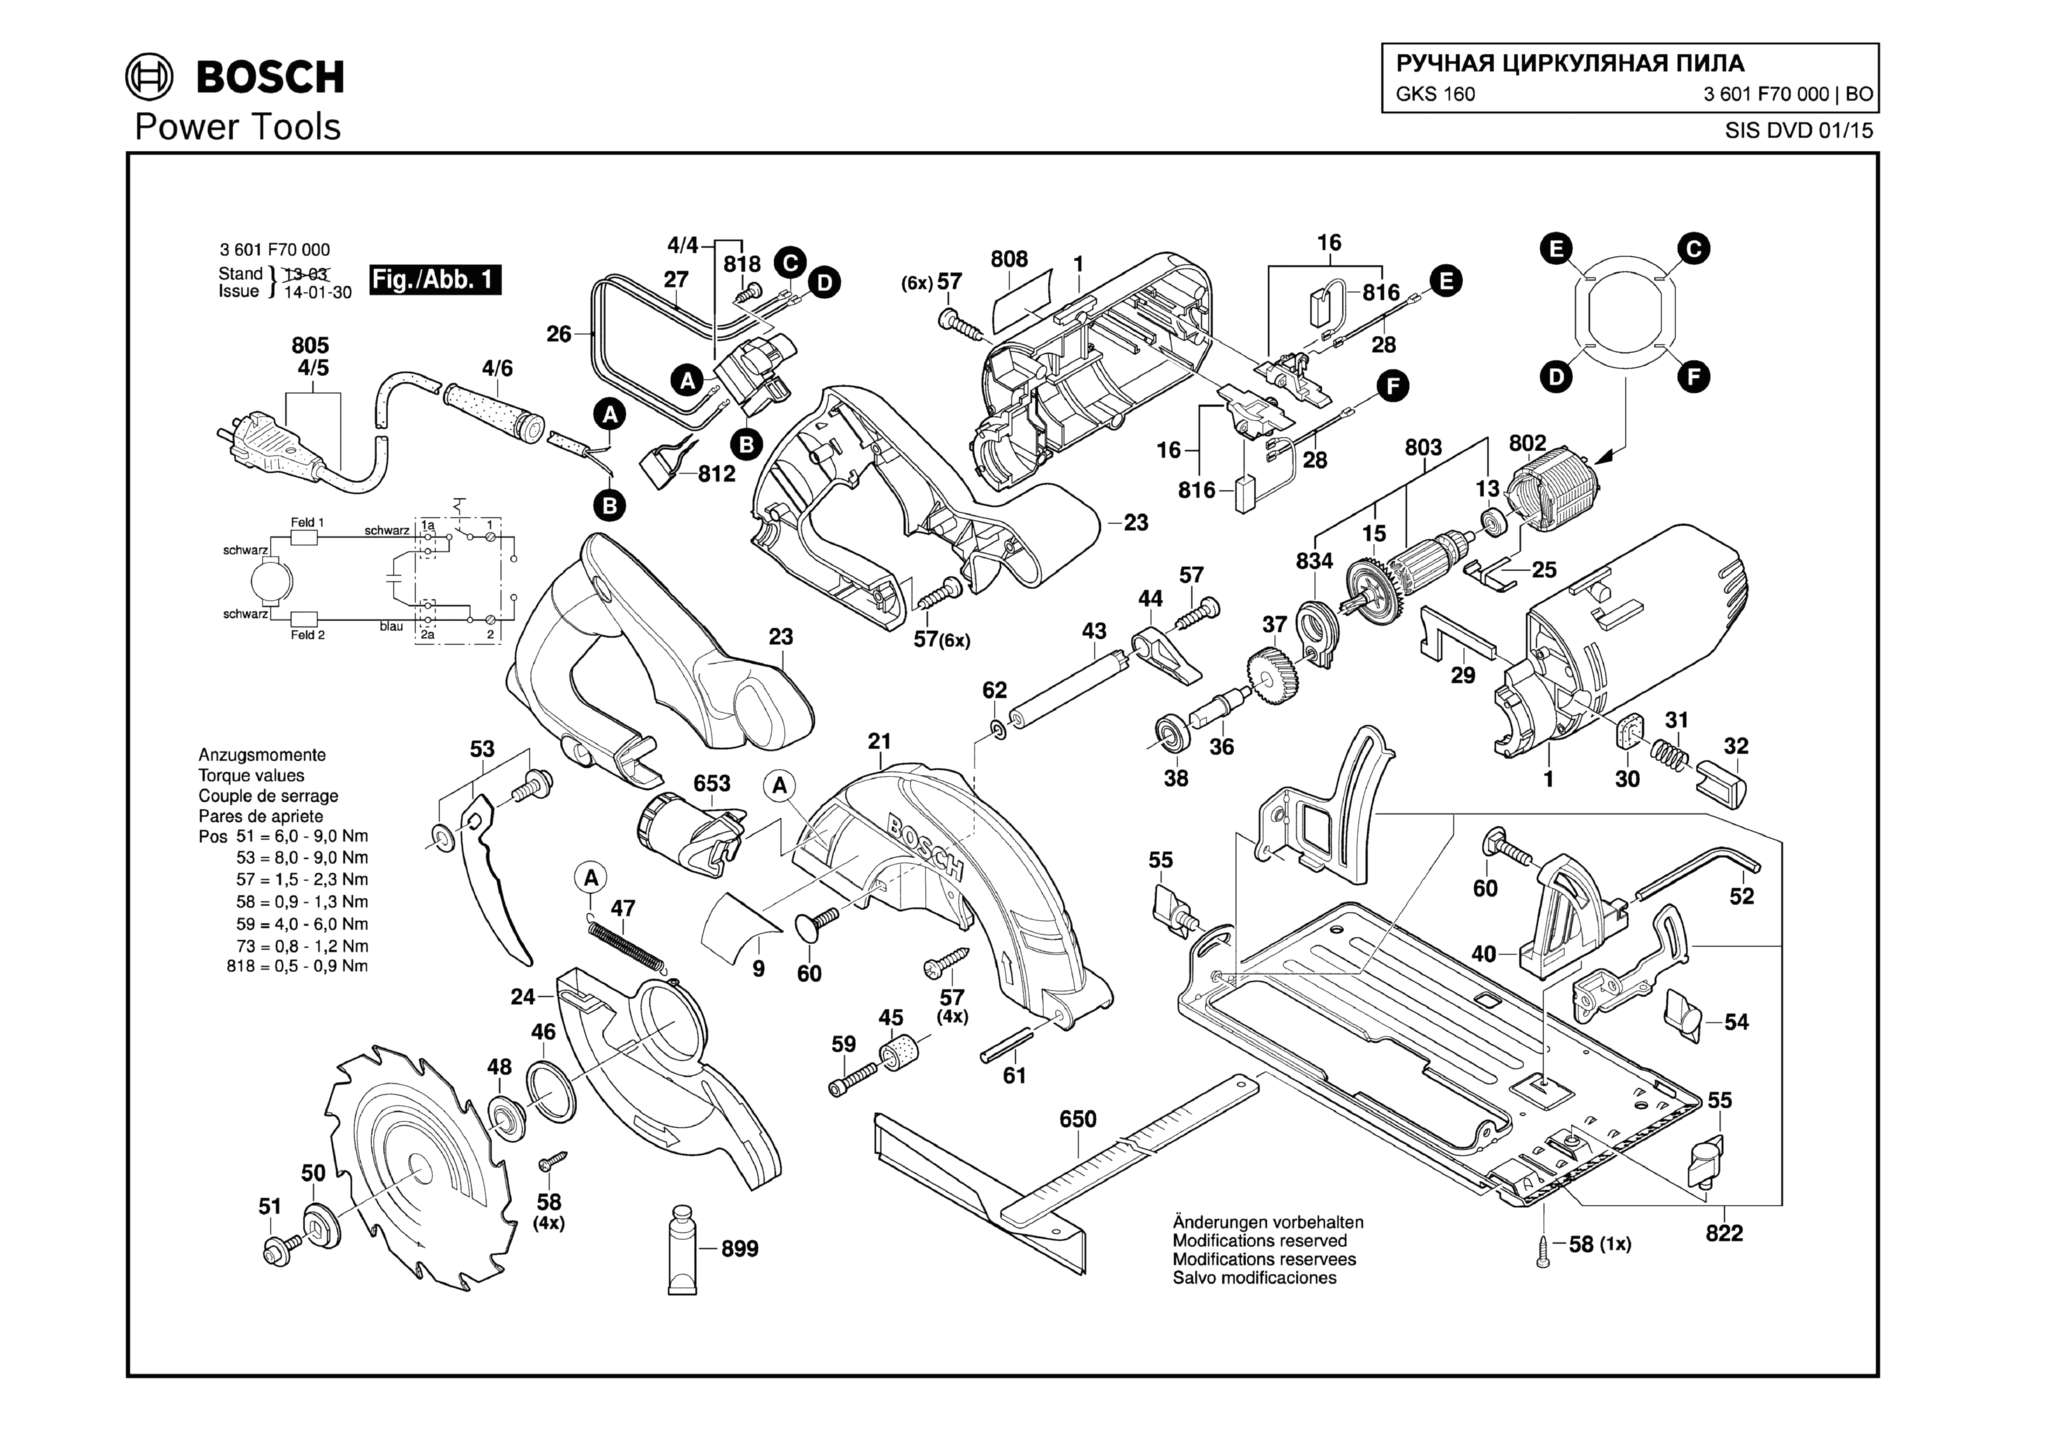 Запчасти, схема и деталировка Bosch GKS 160 (ТИП 3601F70000)